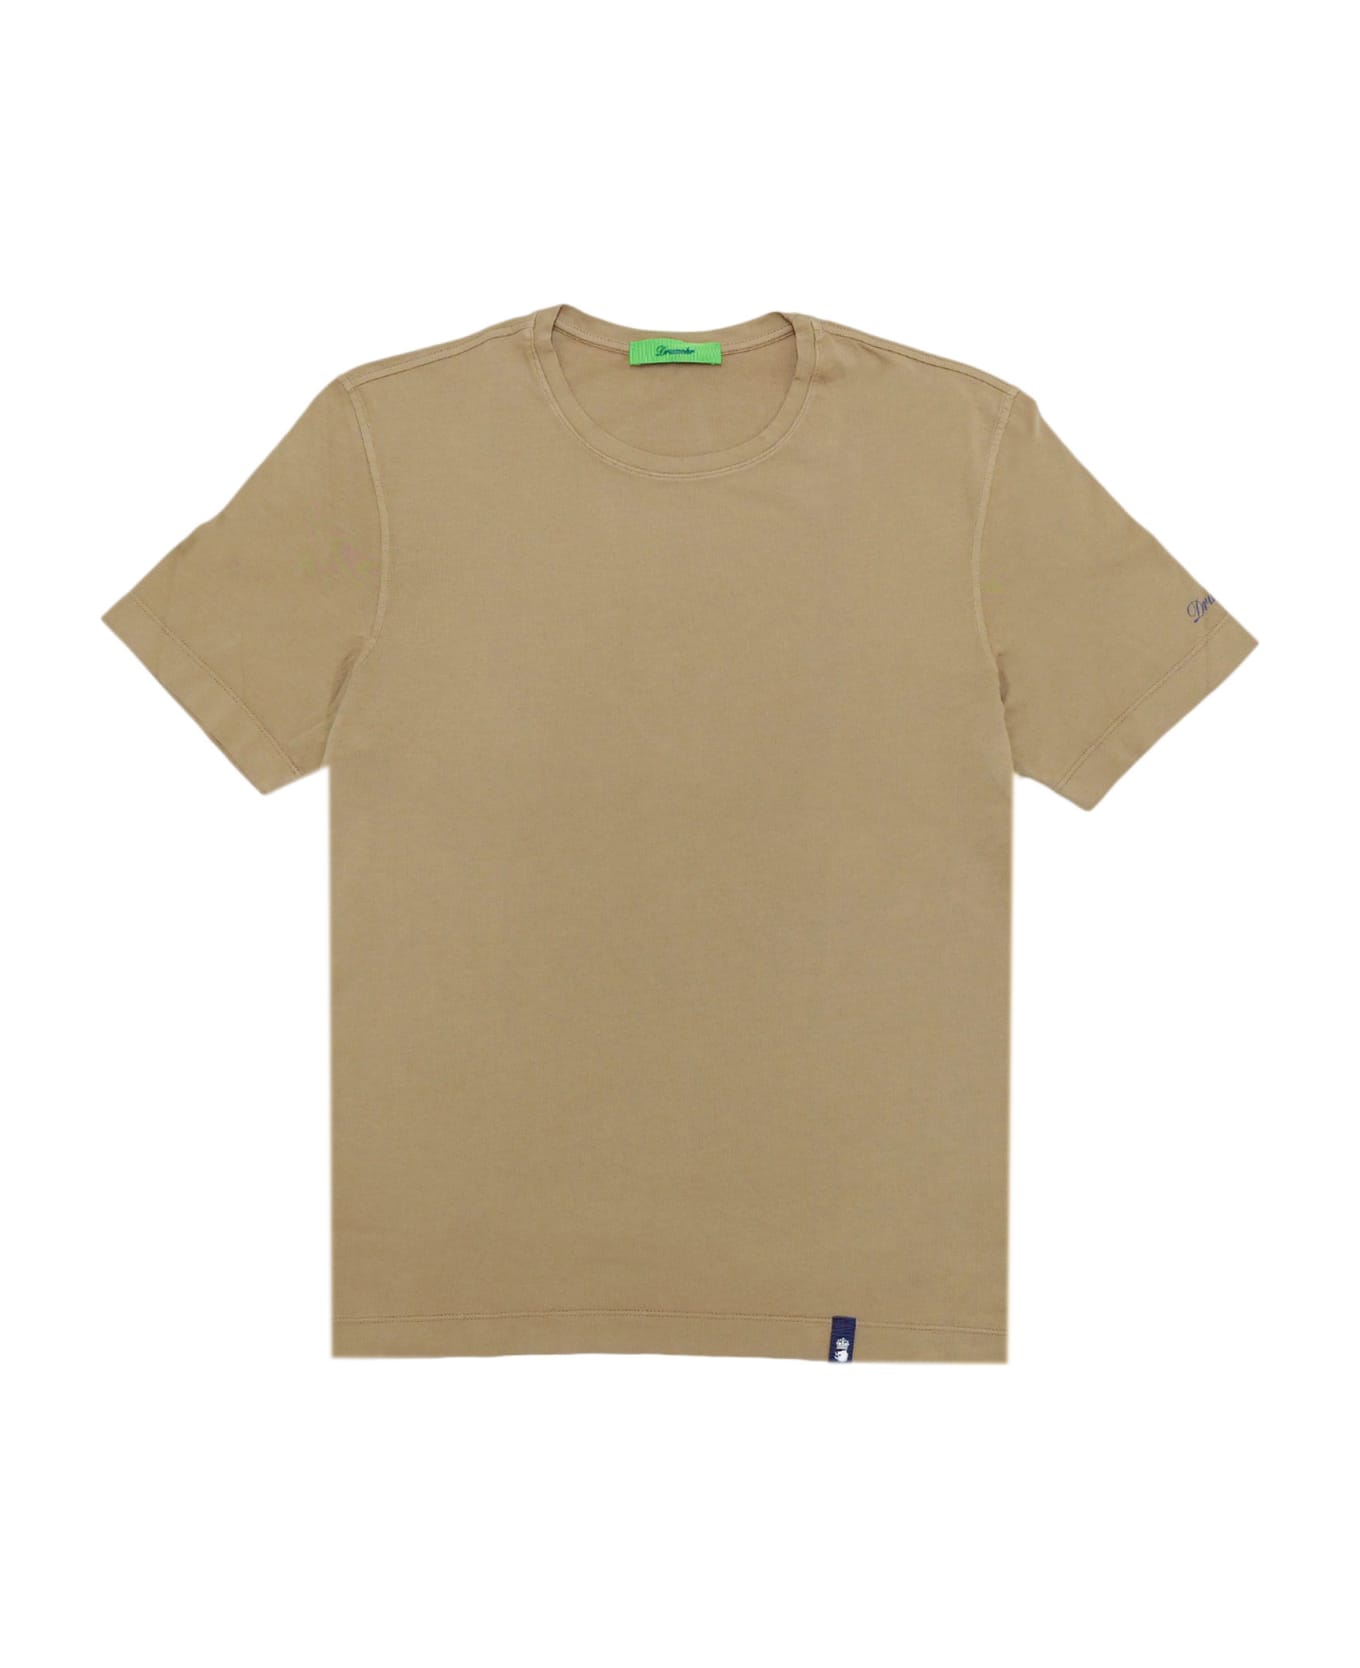 Drumohr T-shirt - Brown